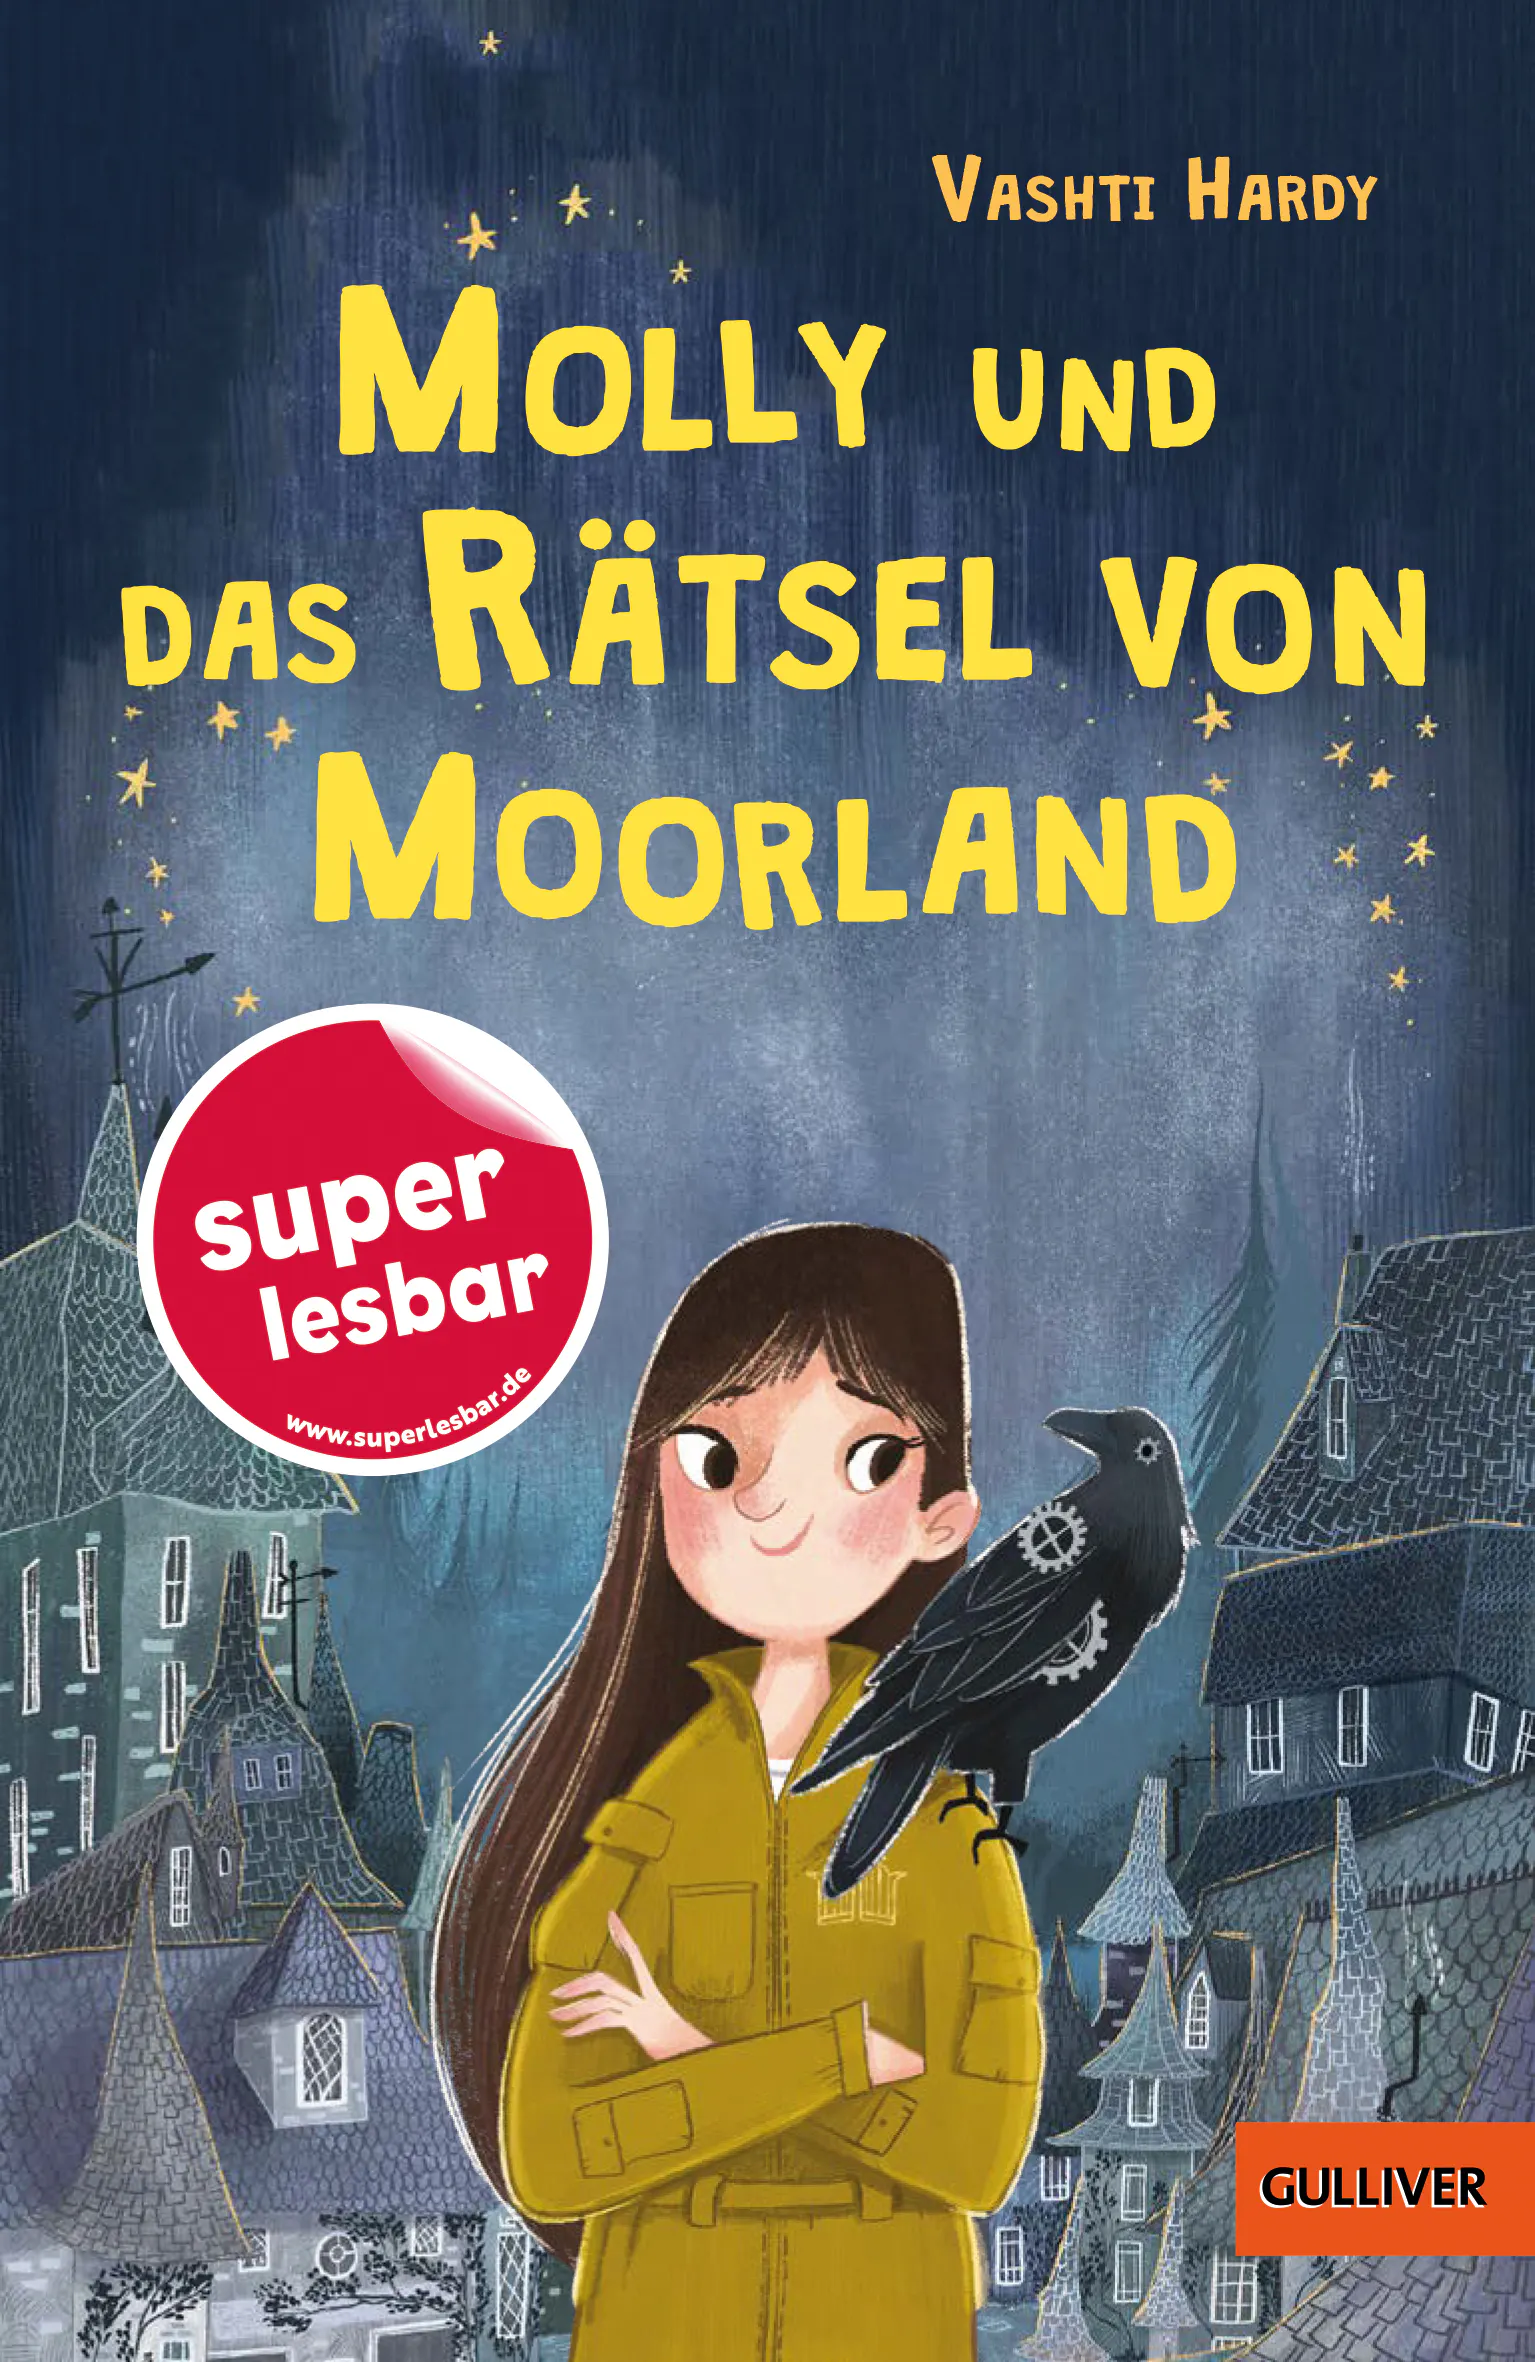 Cover von "Molly und das Rätsel von Moorland" aus der "superlesbar"-Reihe im Gulliver Verlag.